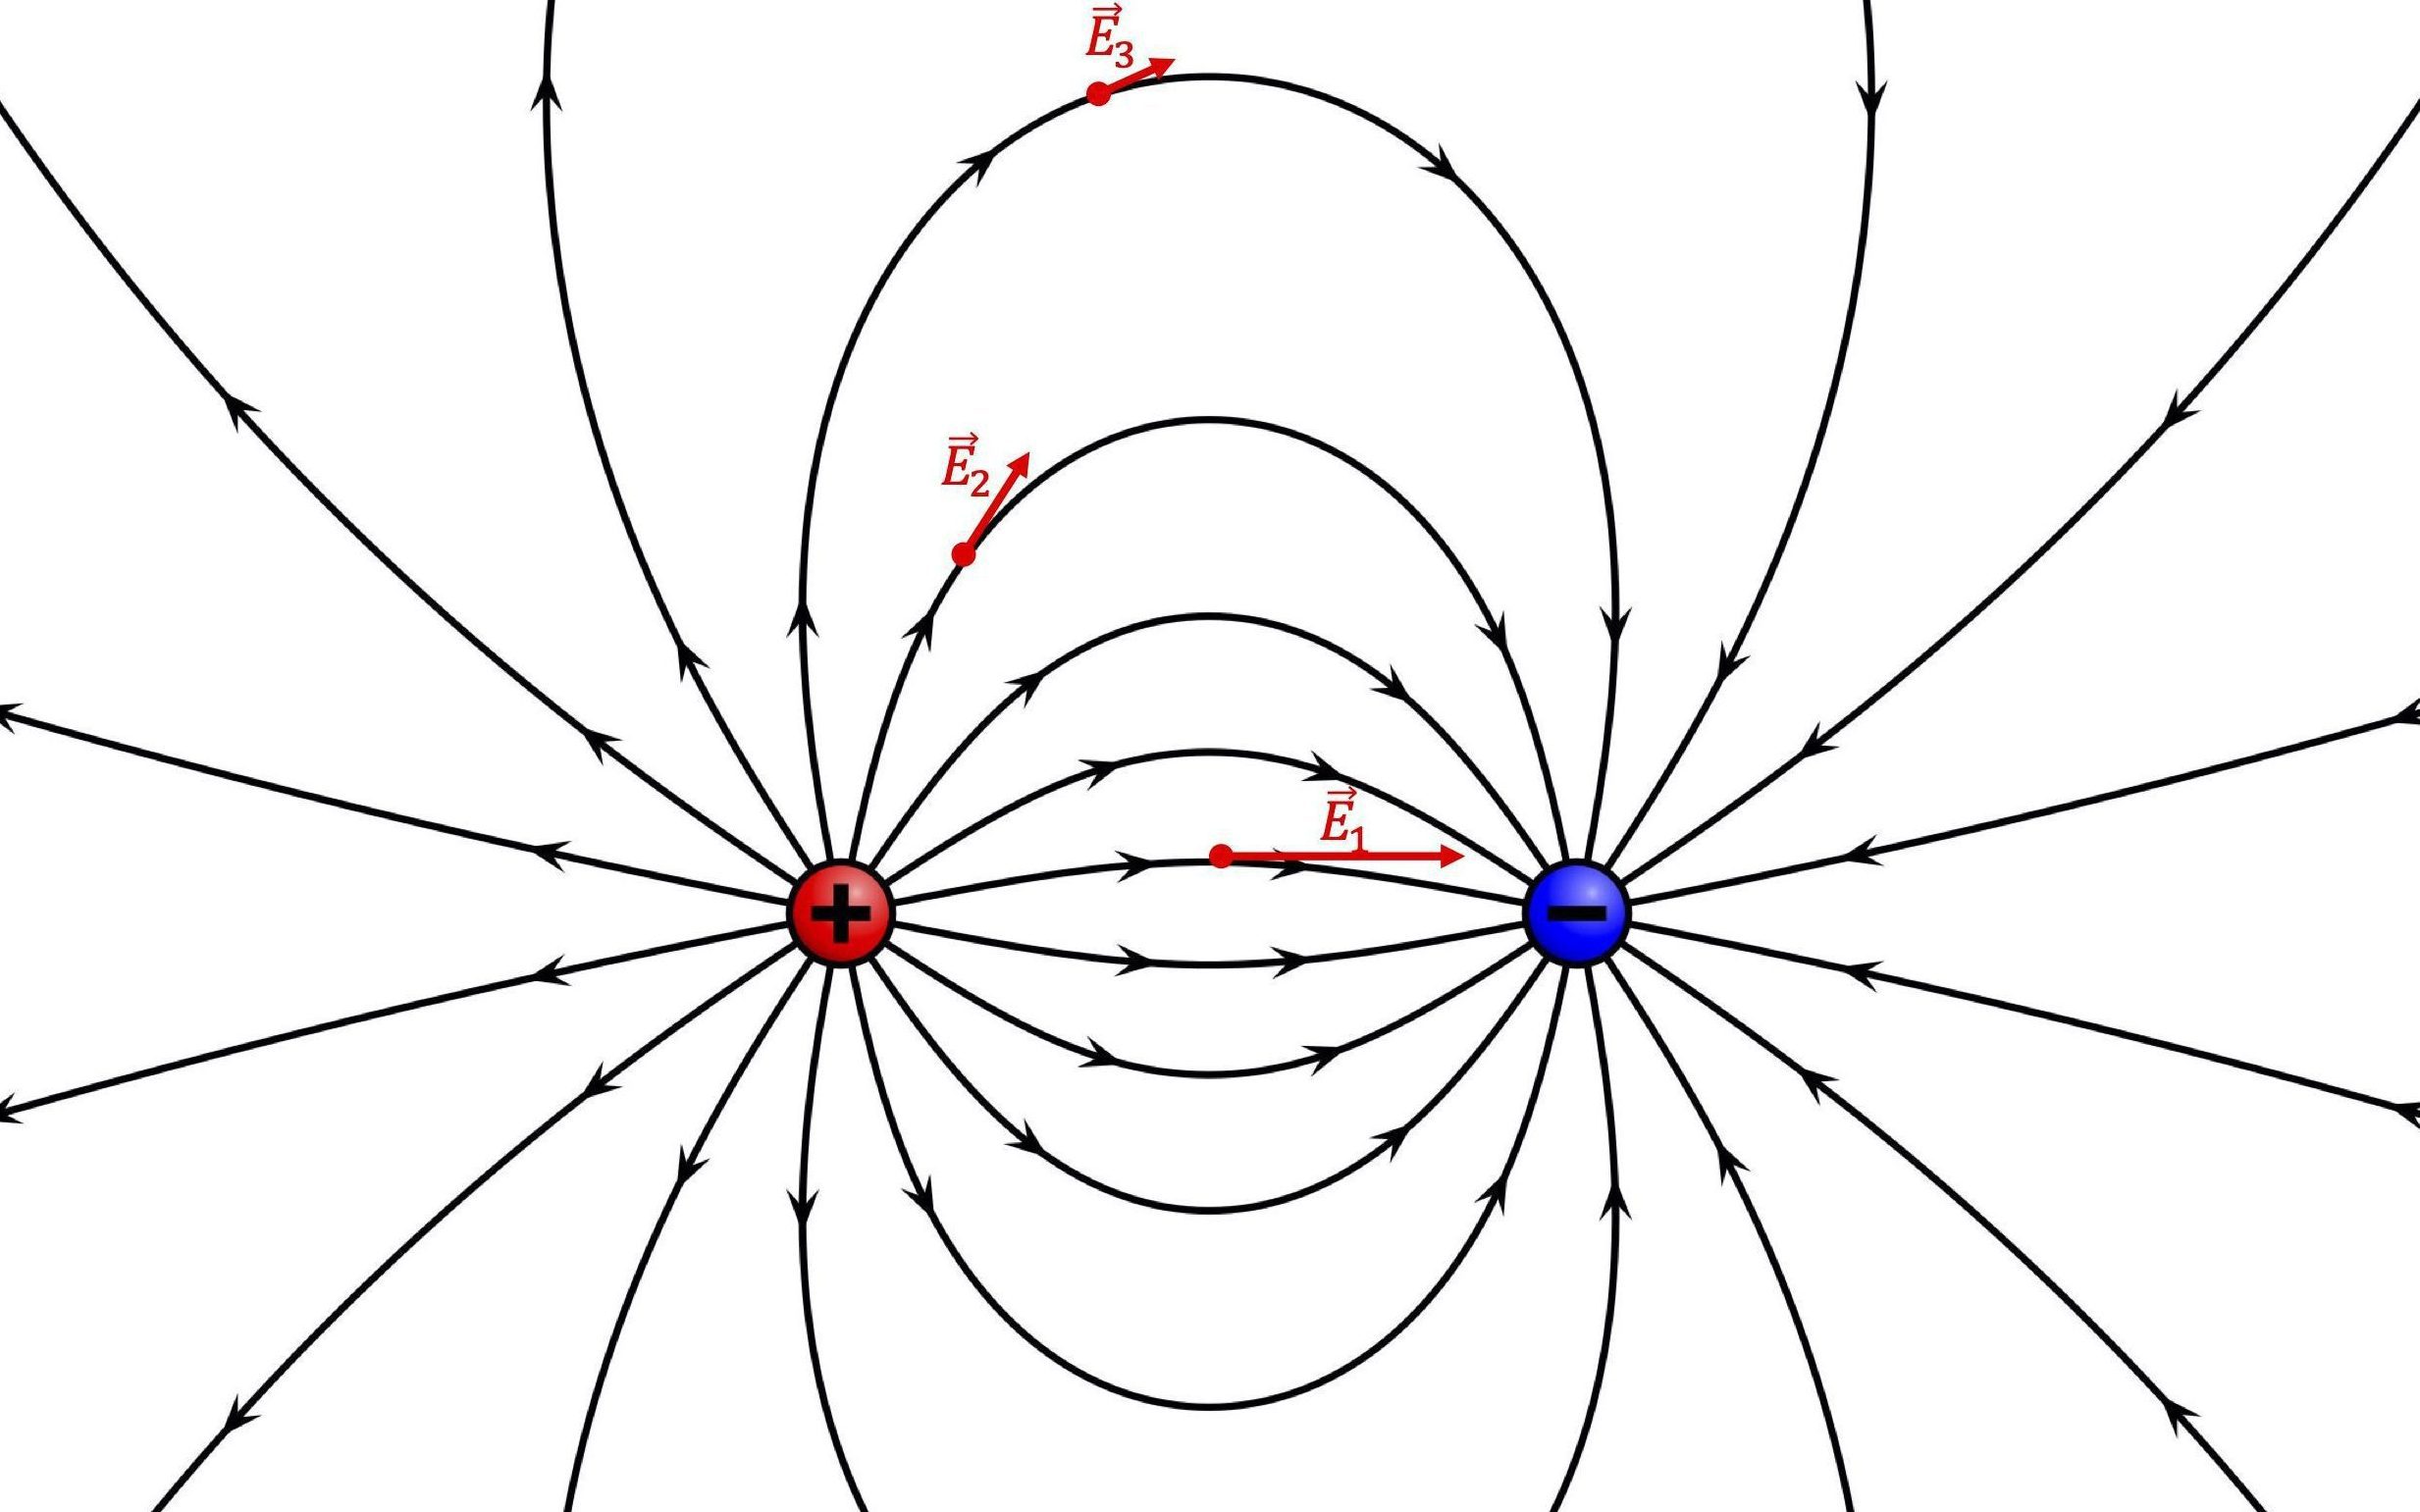 [그림 3] 전기력선 위 세 지점에서의 전기장 벡터의 방향과 크기